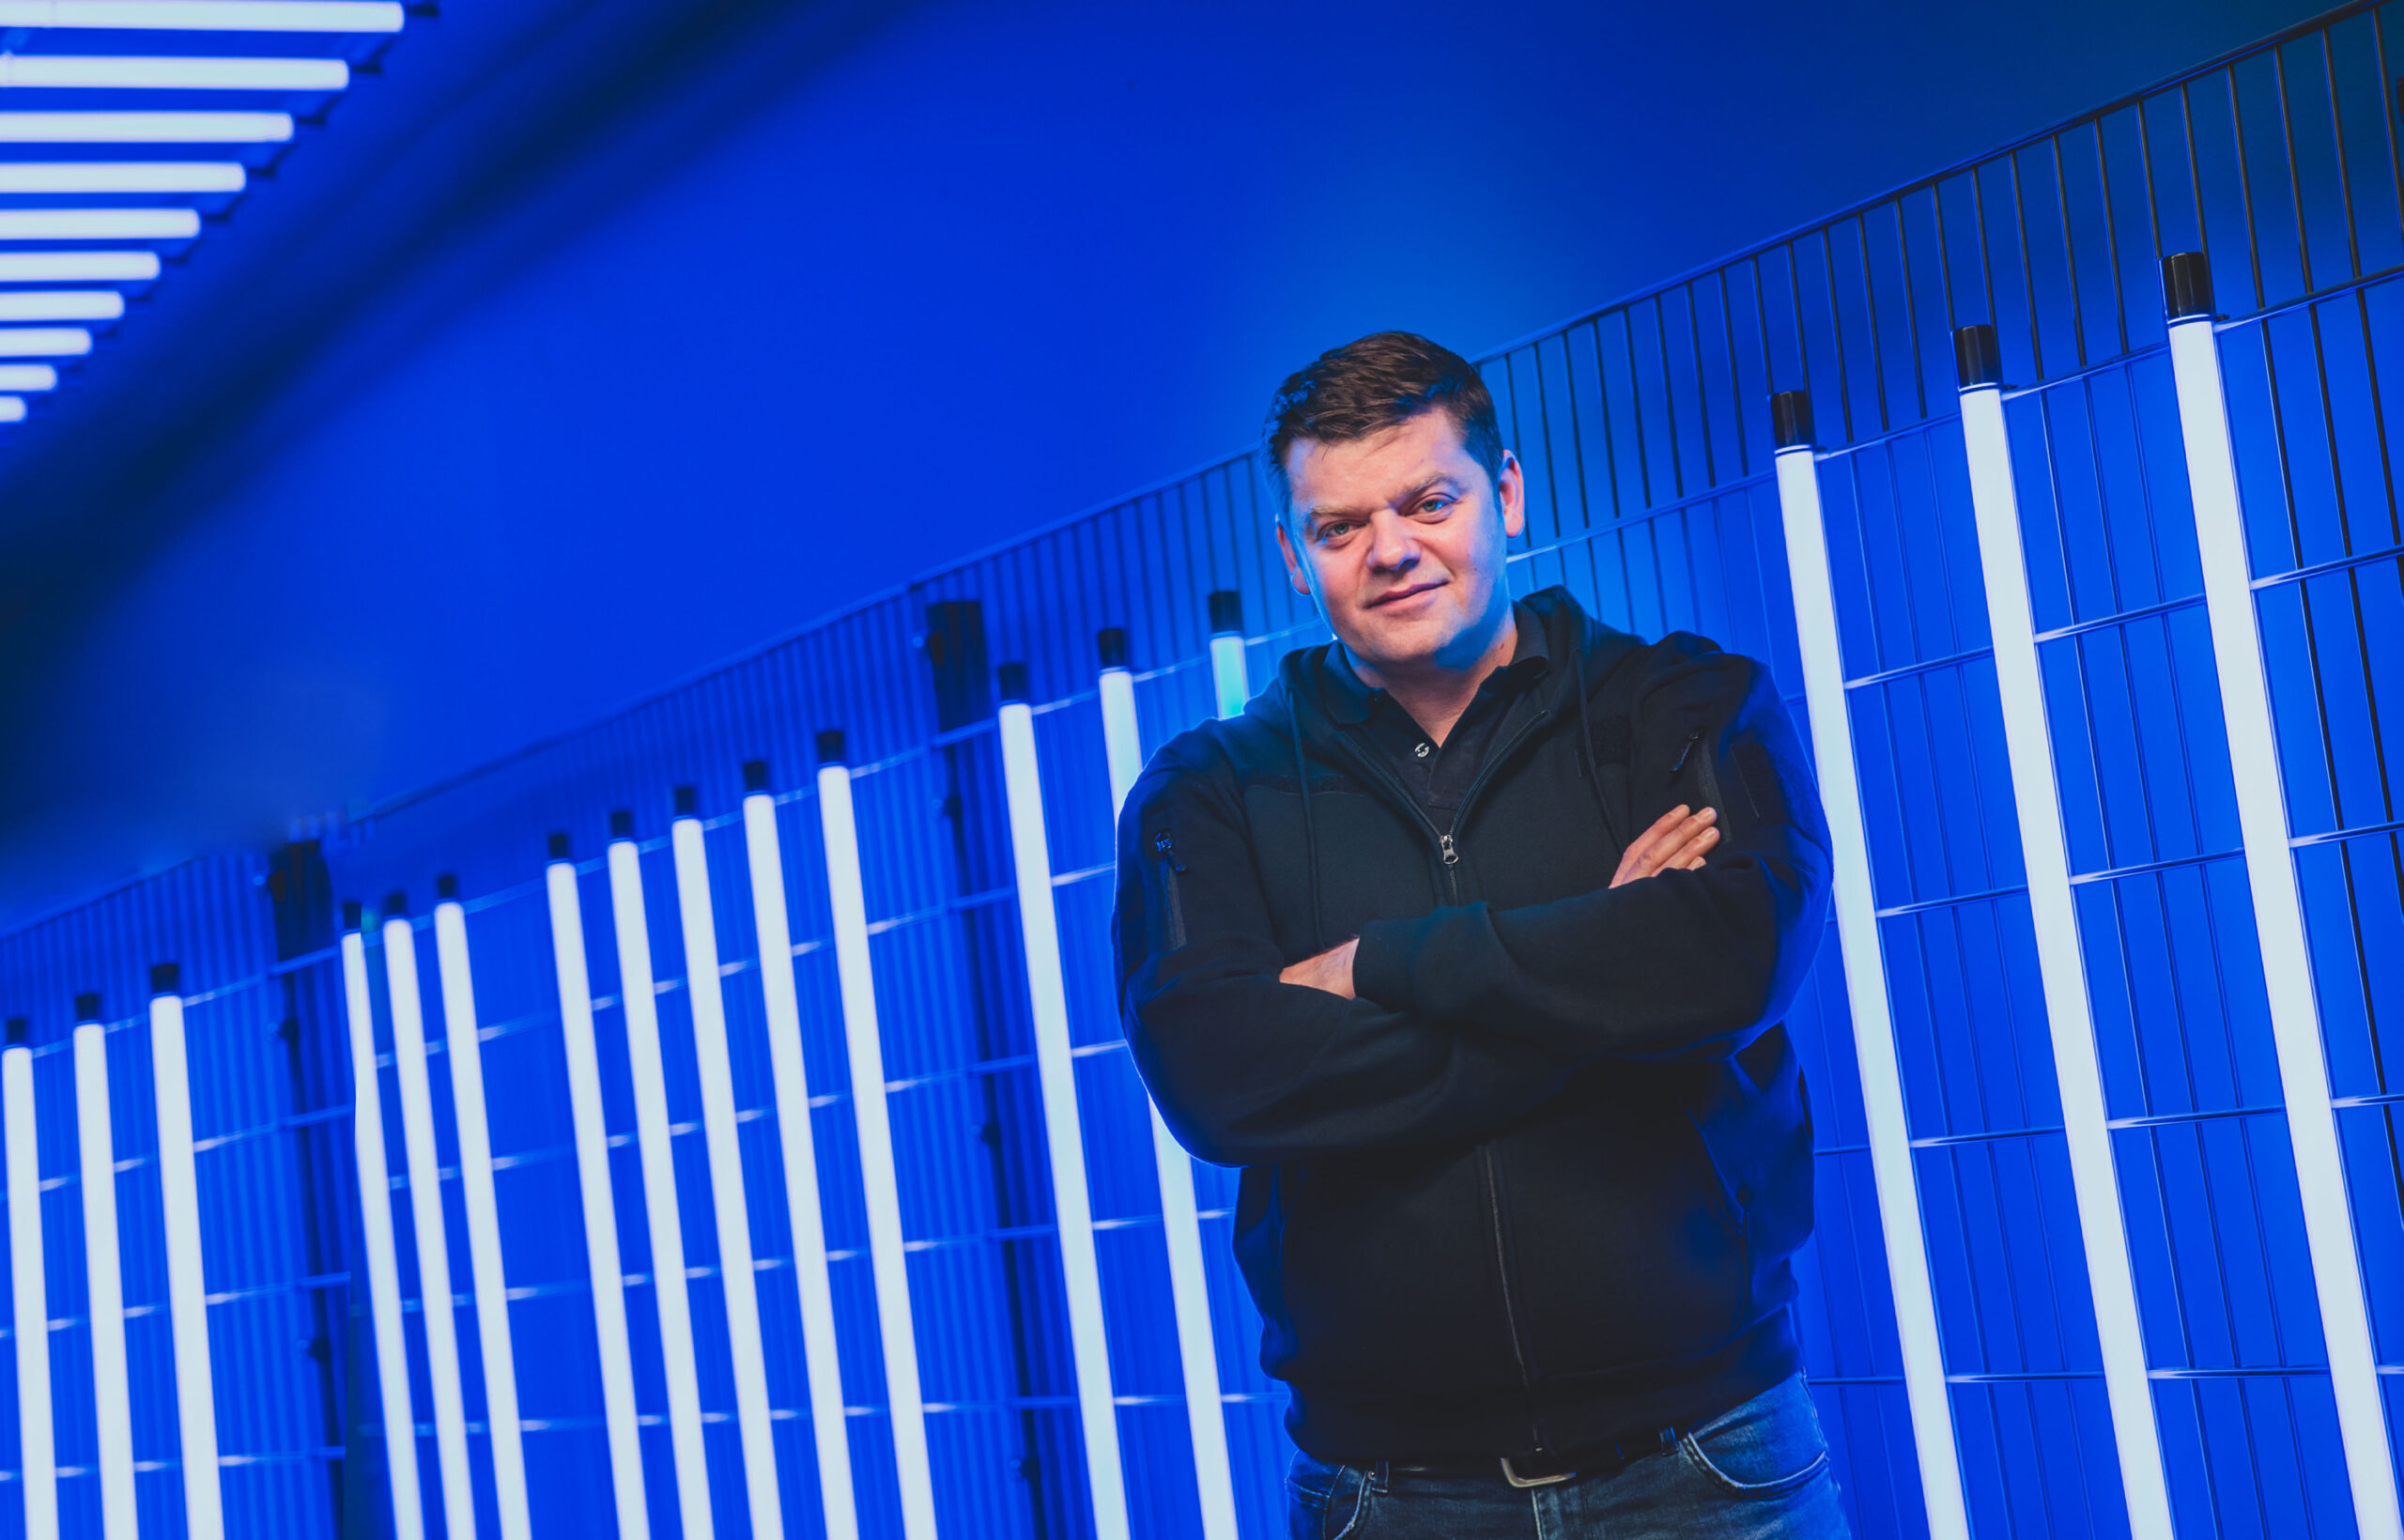 Tomislav Karajica steht vor einer blau angestrahlten Wand mit Neonröhren.